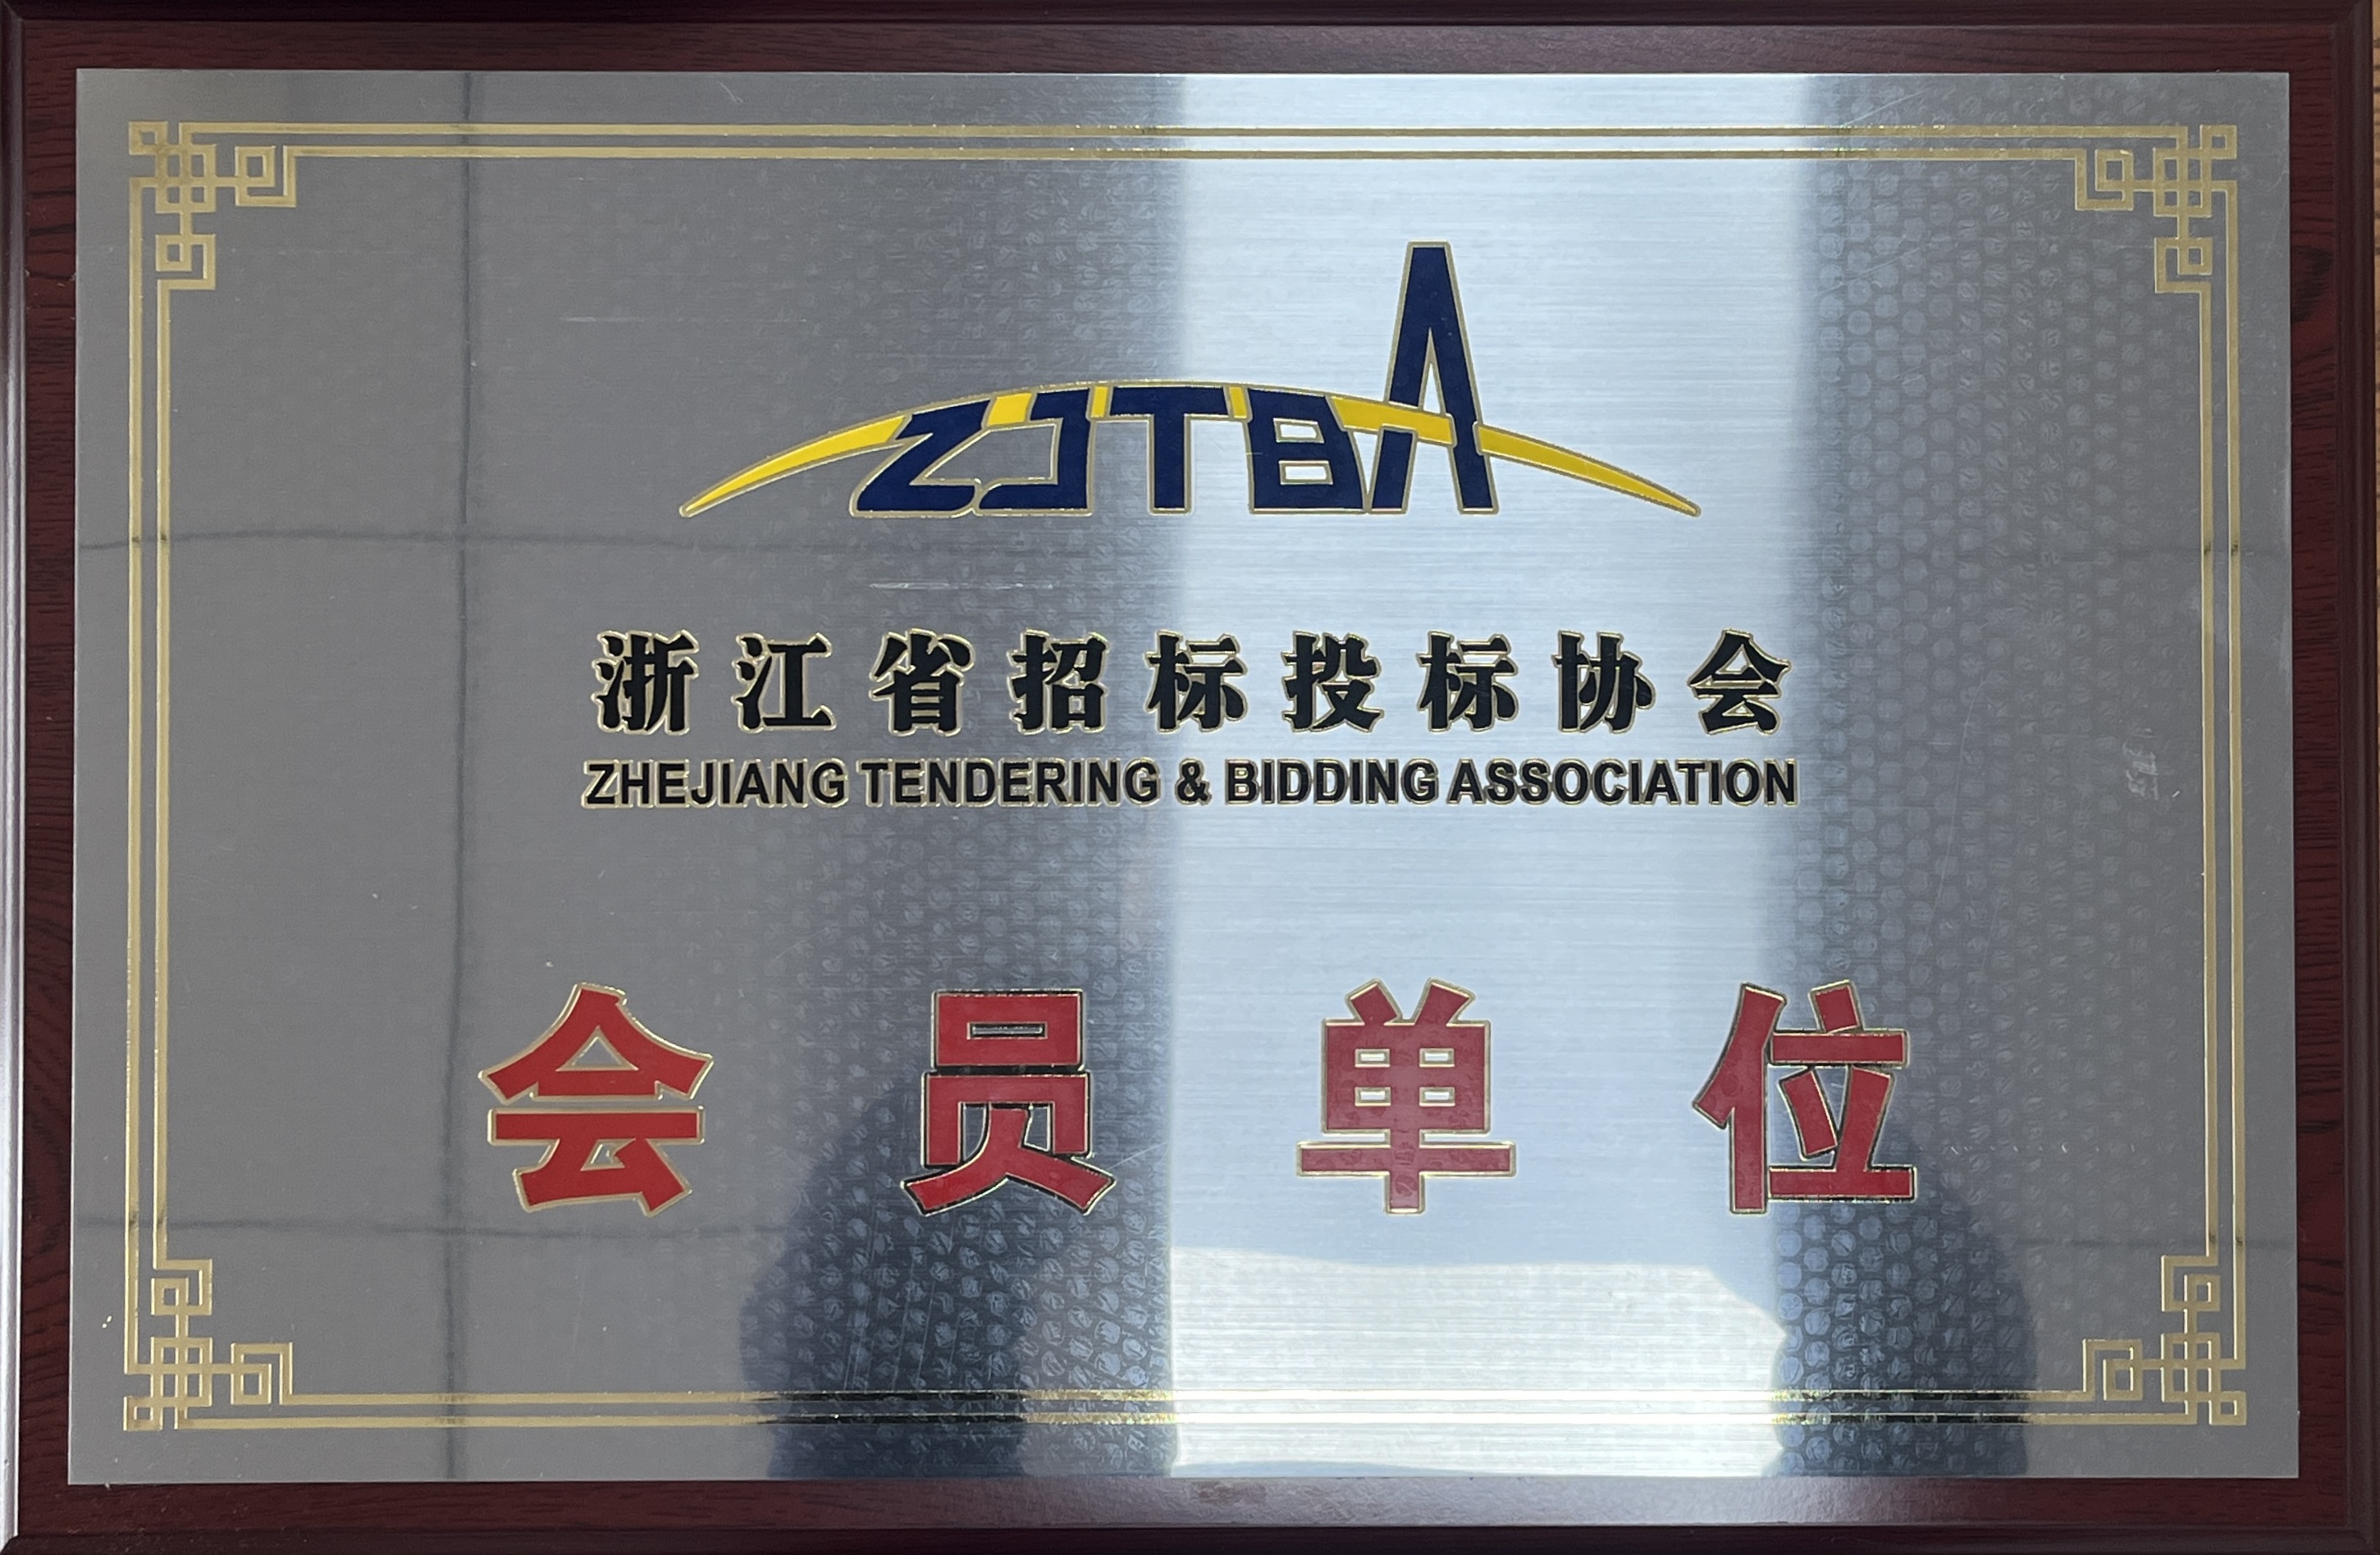 祝贺公司名成为浙江省招标投标协会会员单位